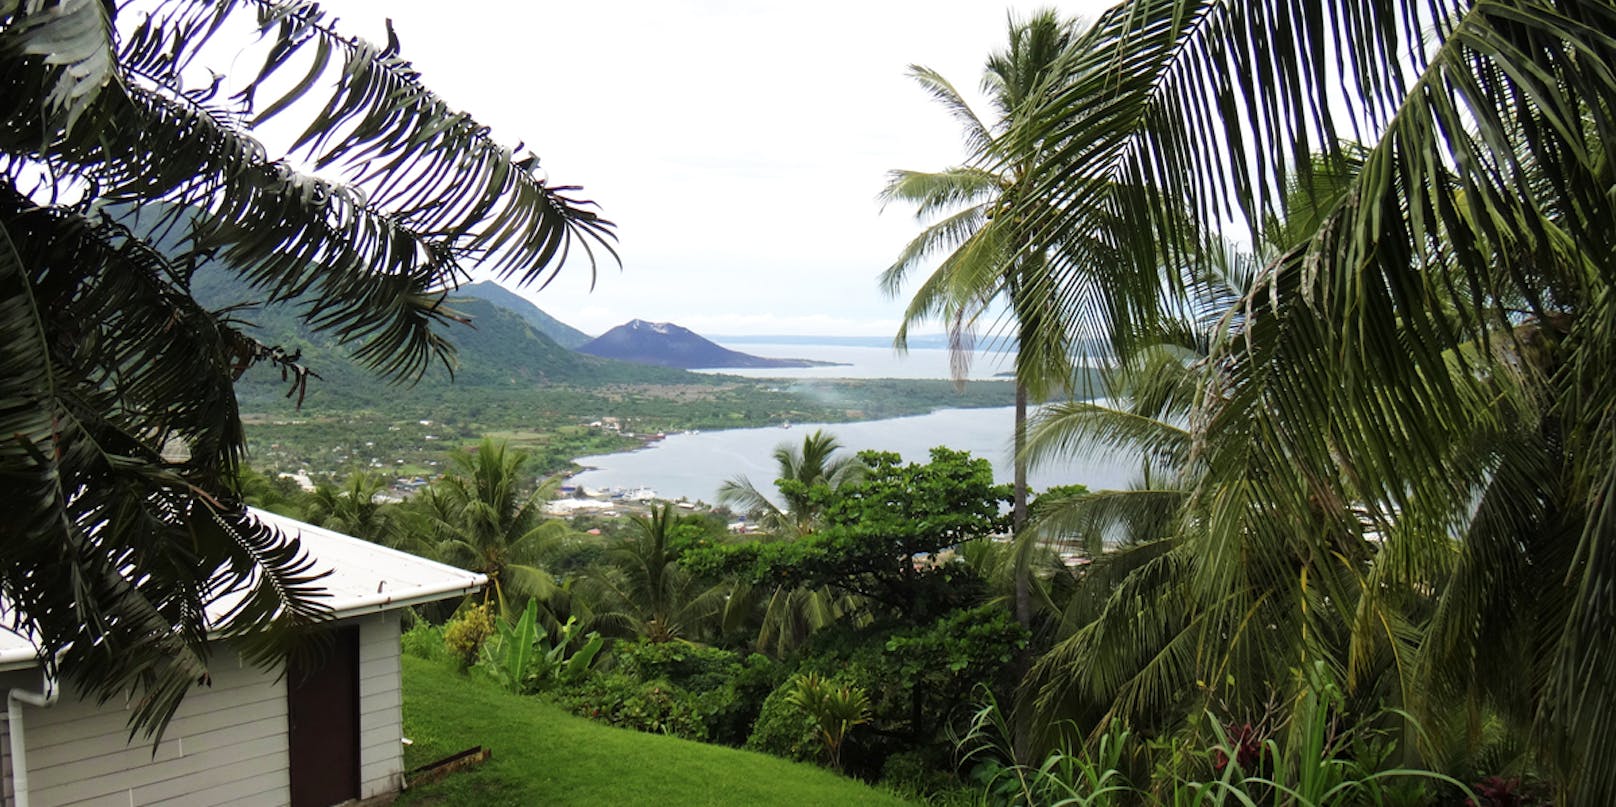 Blick auf die Kleinstadt Rabaul, Papua-Neuguinea.